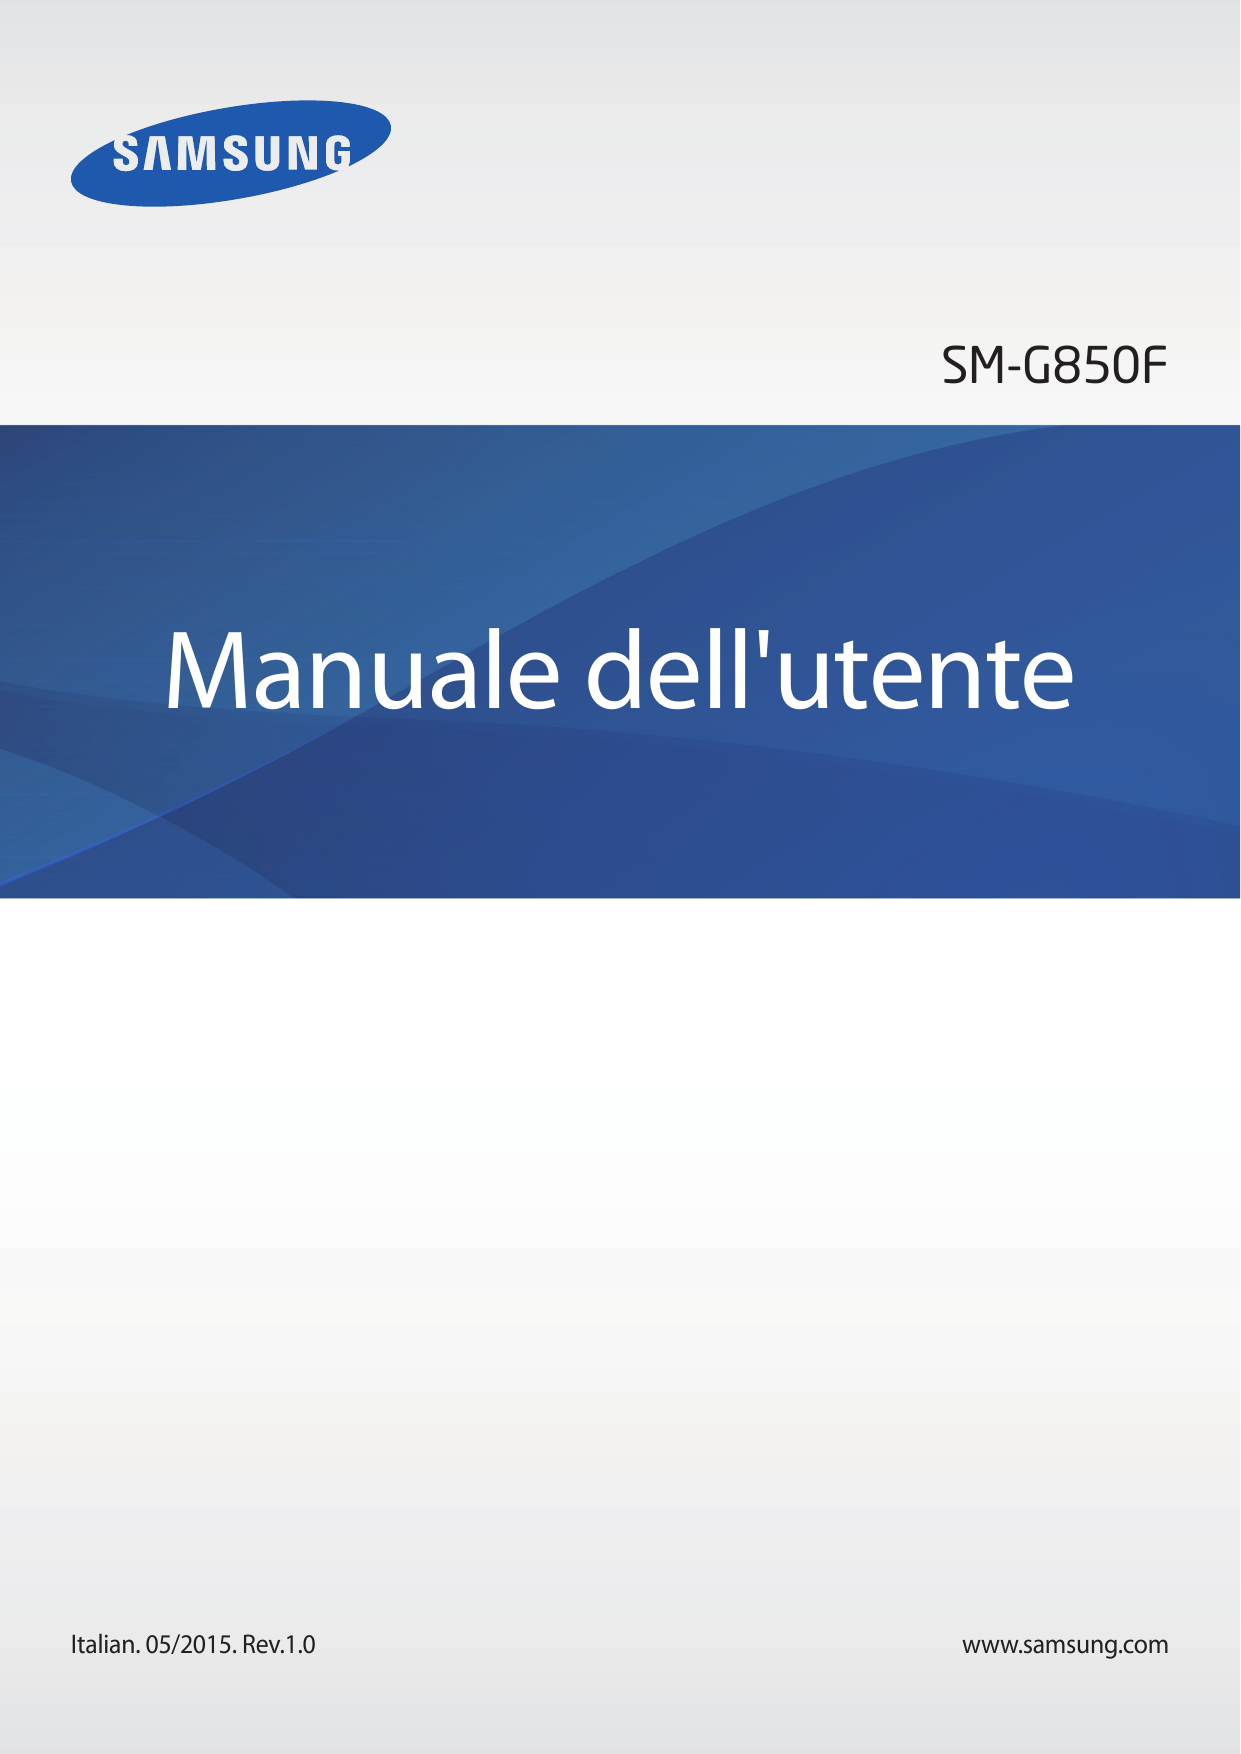 SM-G850FManuale dell'utenteItalian. 05/2015. Rev.1.0www.samsung.com